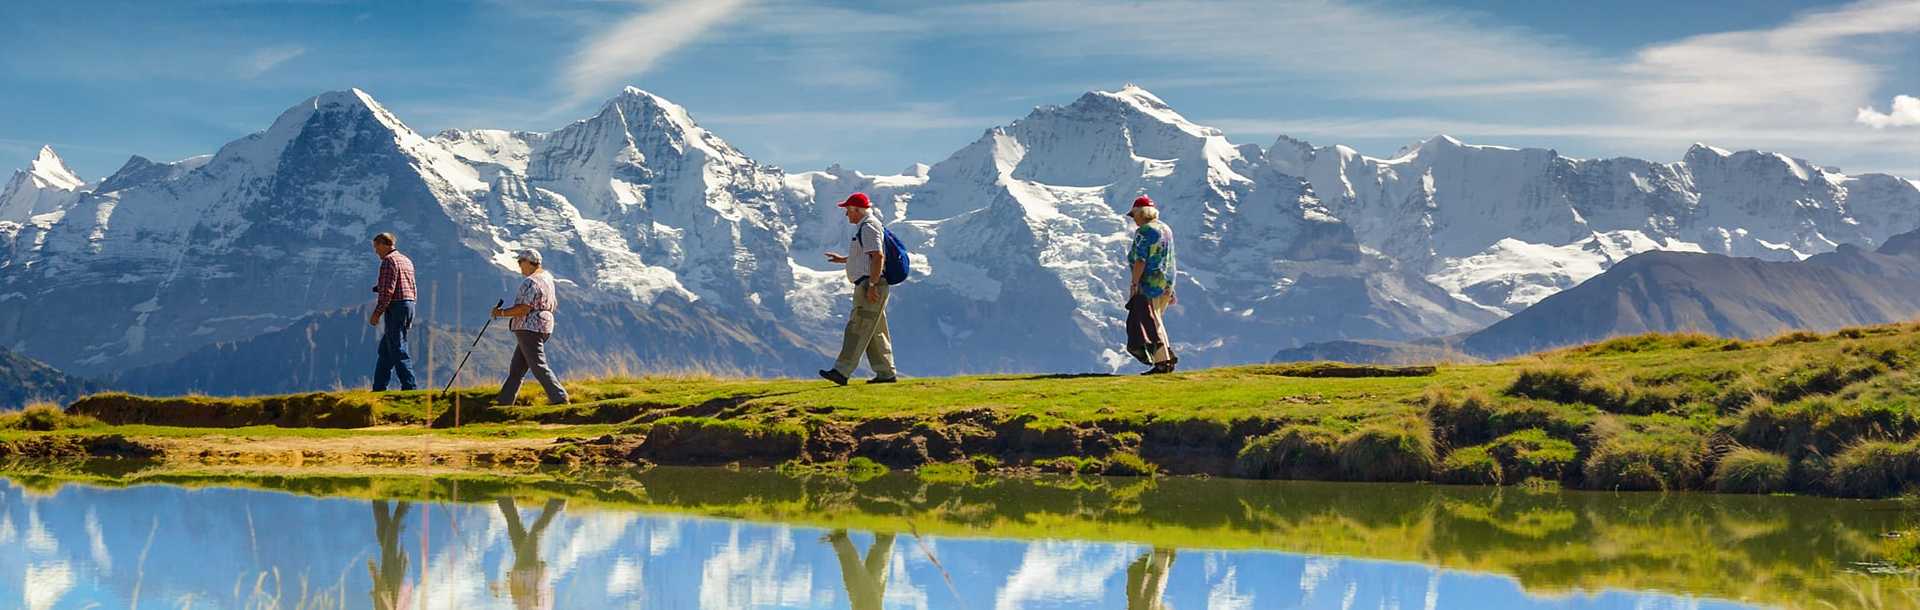 Senior travelers hiking in Bernese Oberland, Switzerland